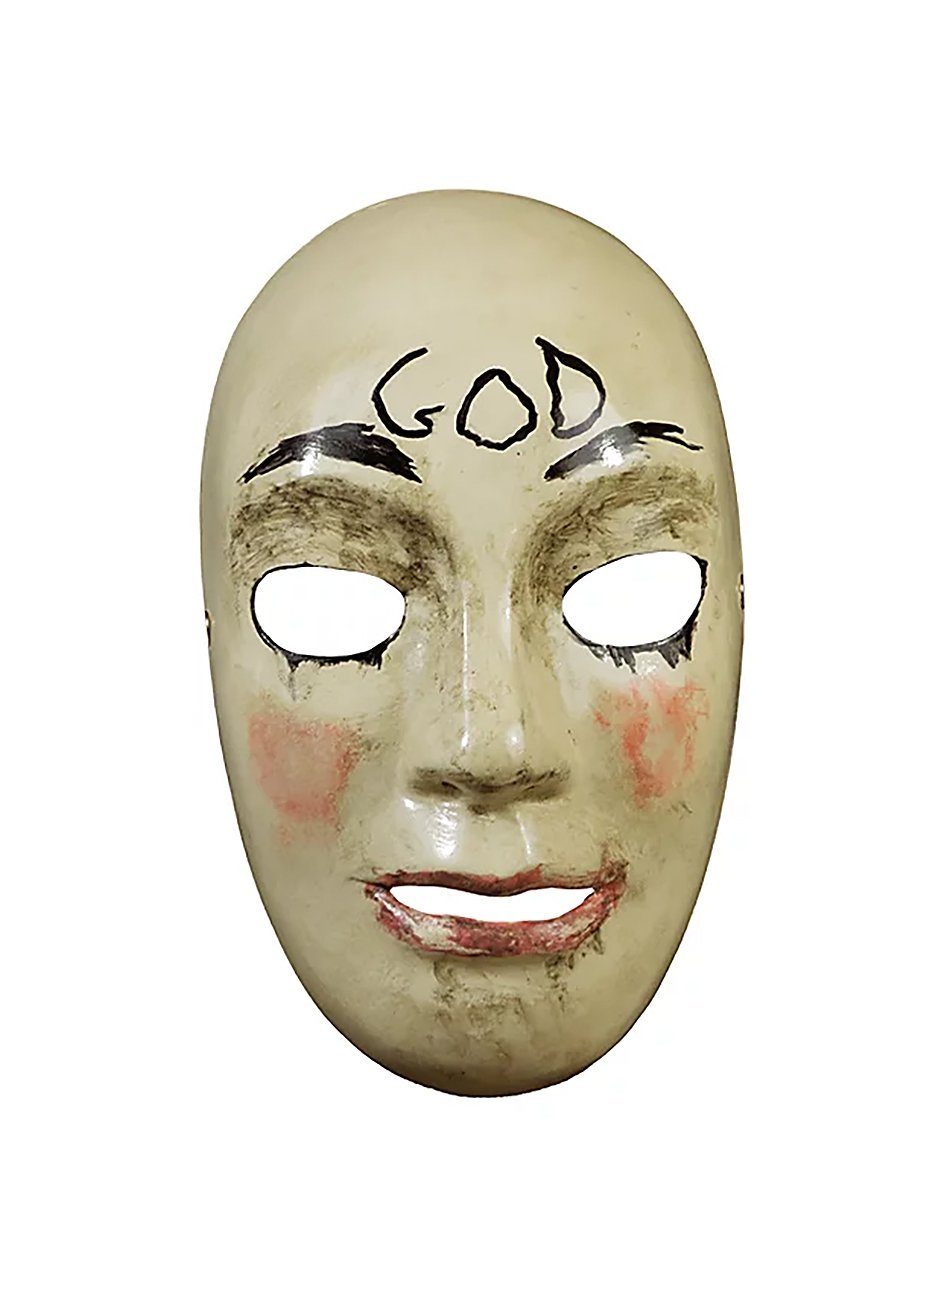 Trick or Treat Verkleidungsmaske The Purge God, Schockermaske aus der dystopischen 'The Purge'-Filmreihe